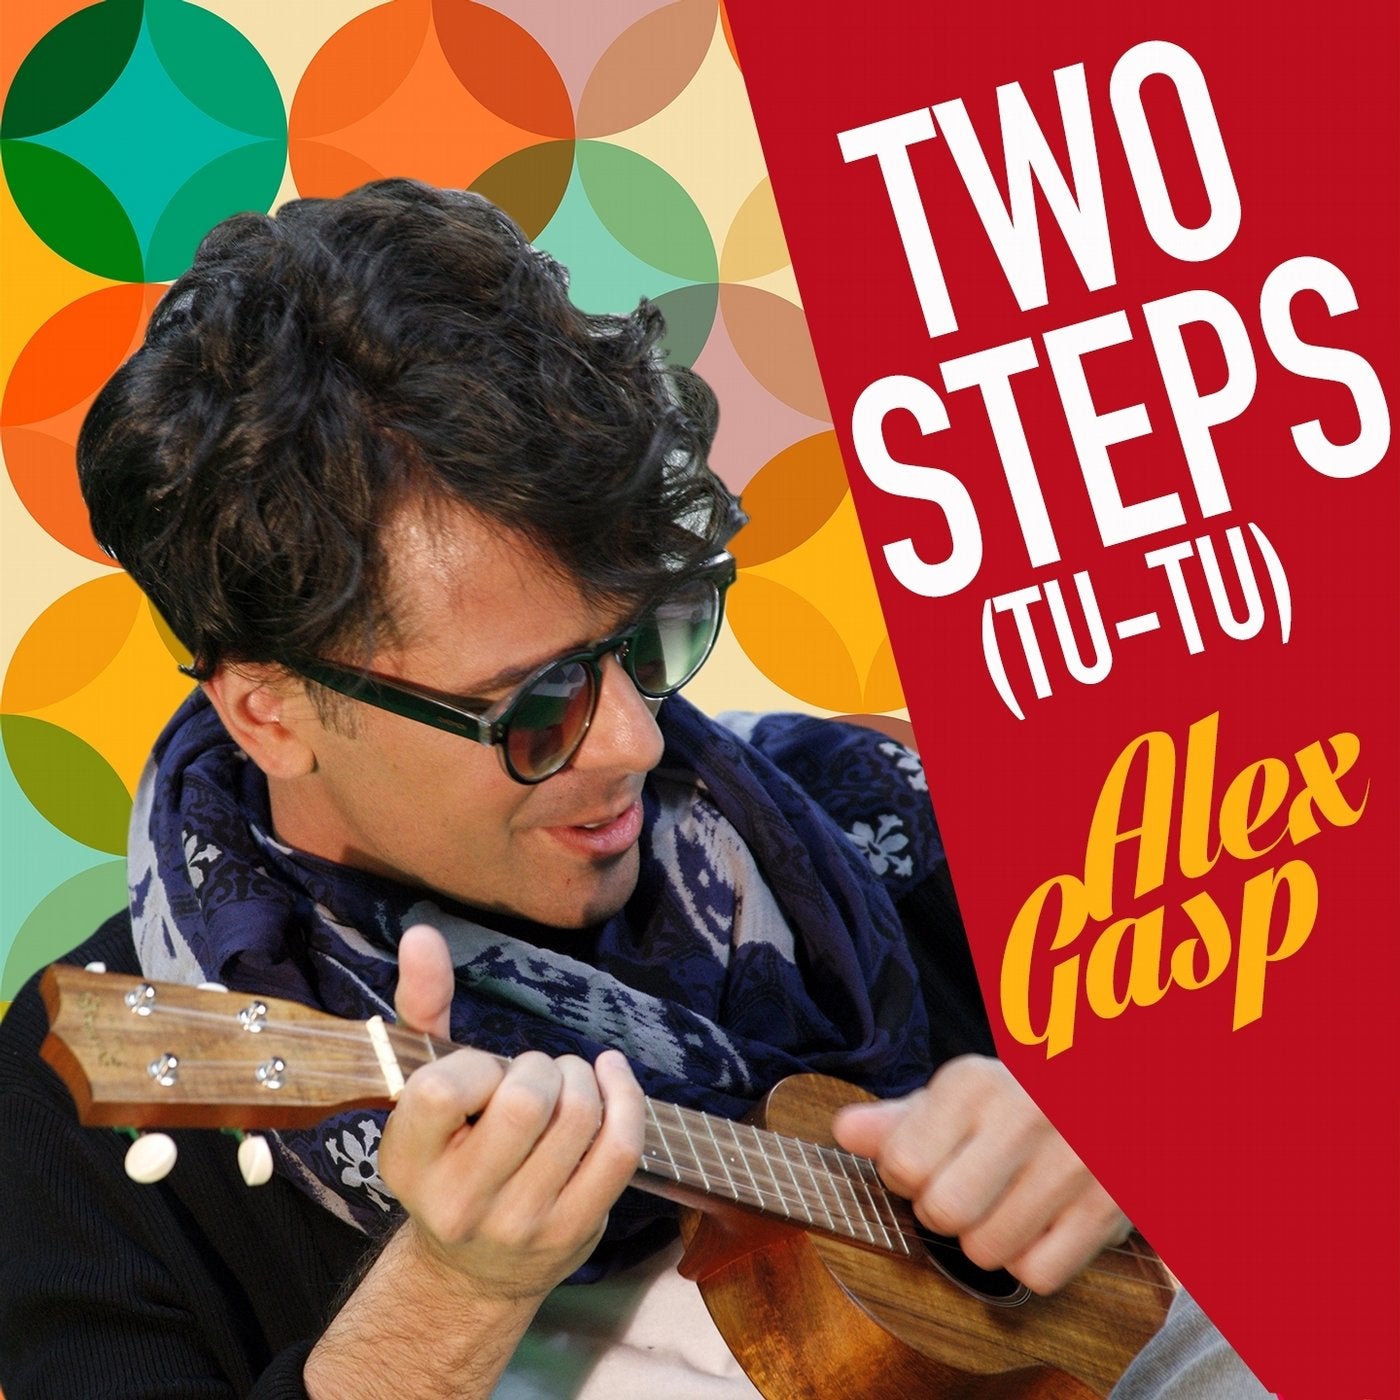 Two Steps (Tu-Tu)